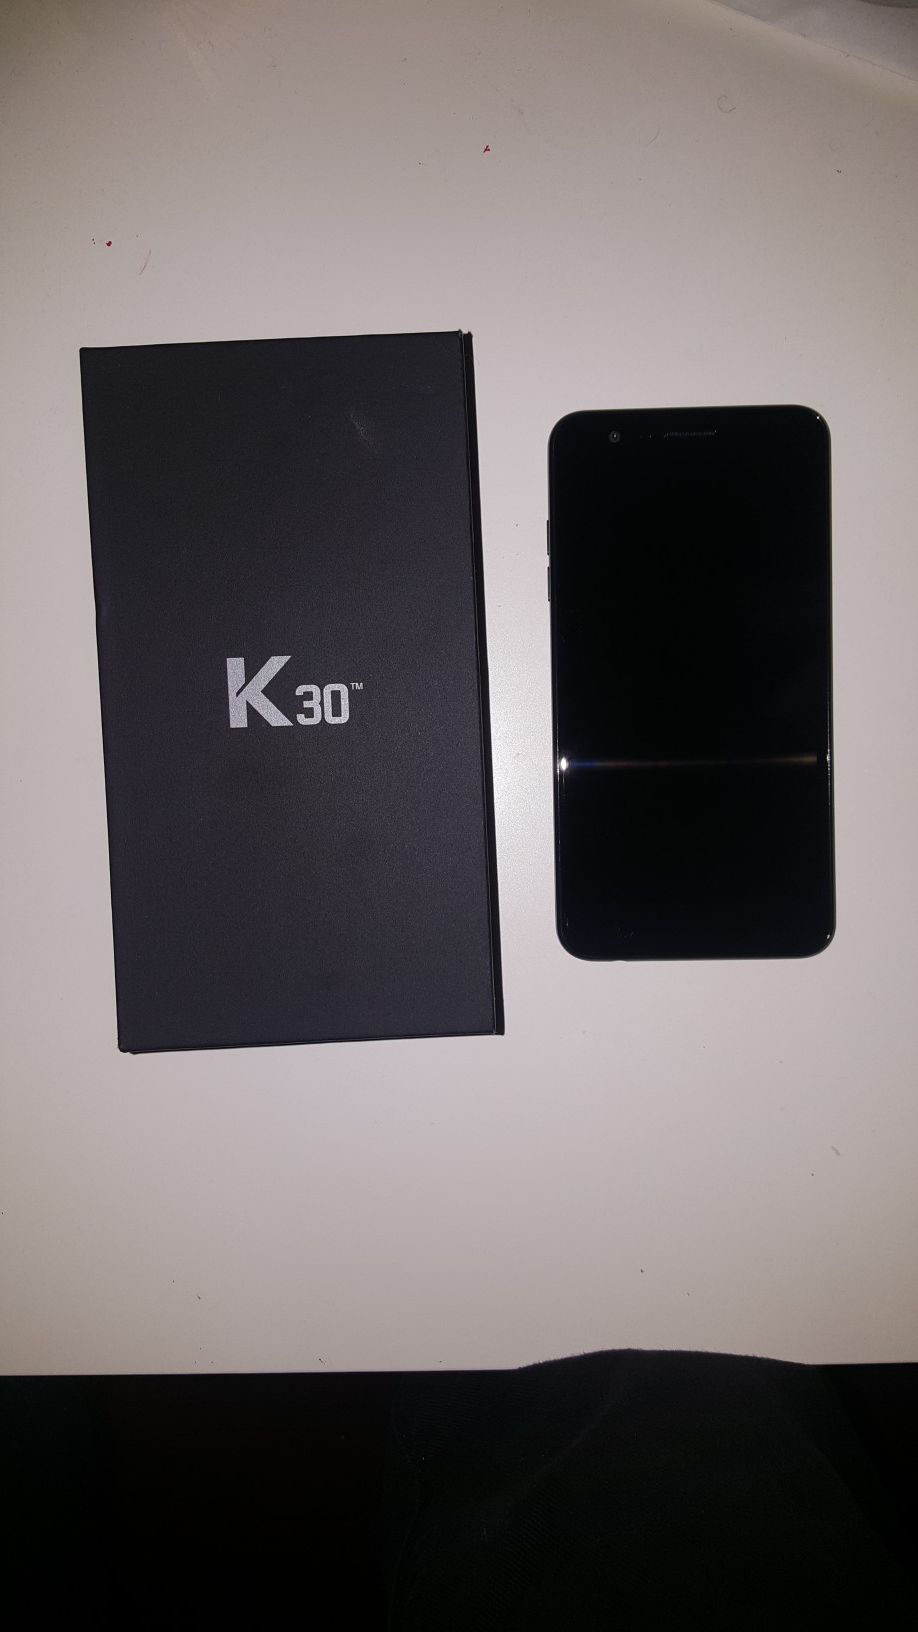 LG K30